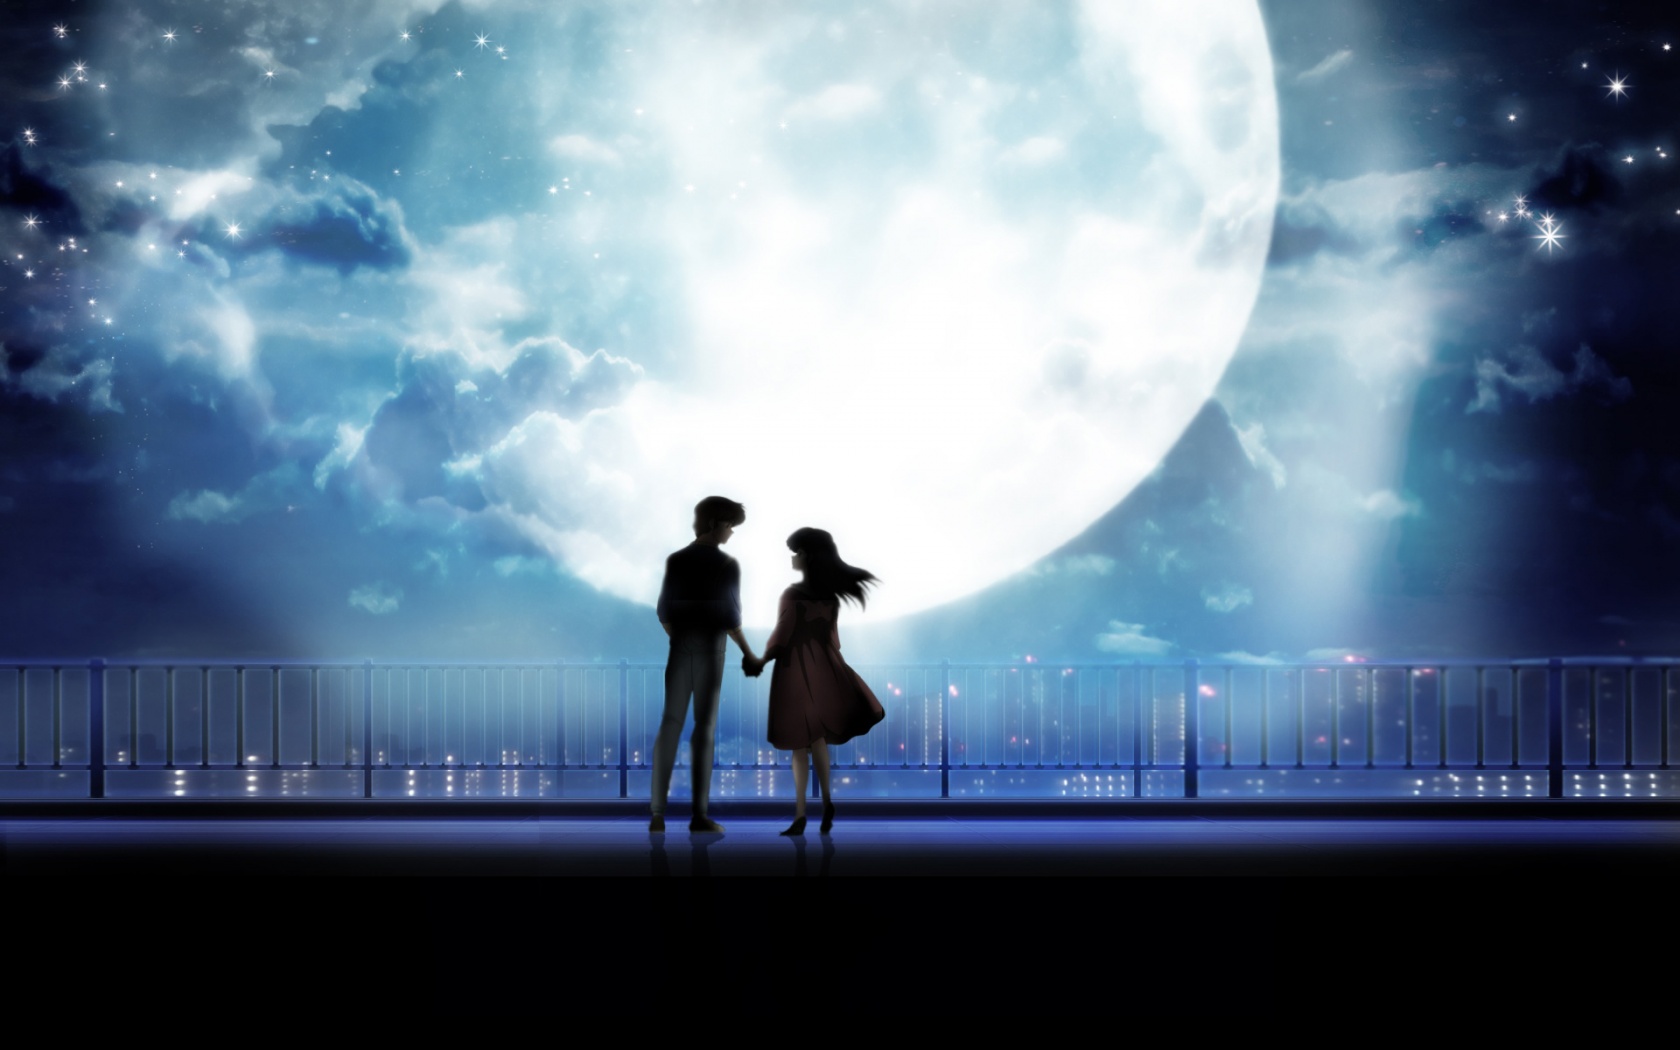 Những đôi anime ánh trăng sẽ đưa bạn đến một thế giới tình yêu cổ điển khi mà ánh trăng lung linh soi sáng. Chứng kiến những tình yêu của những nhân vật anime trong bóng trăng sẽ khiến bạn muốn chìm đắm vào khoảnh khắc tuyệt vời đó. Đừng bỏ lỡ chút huyền bí và lãng mạn này!